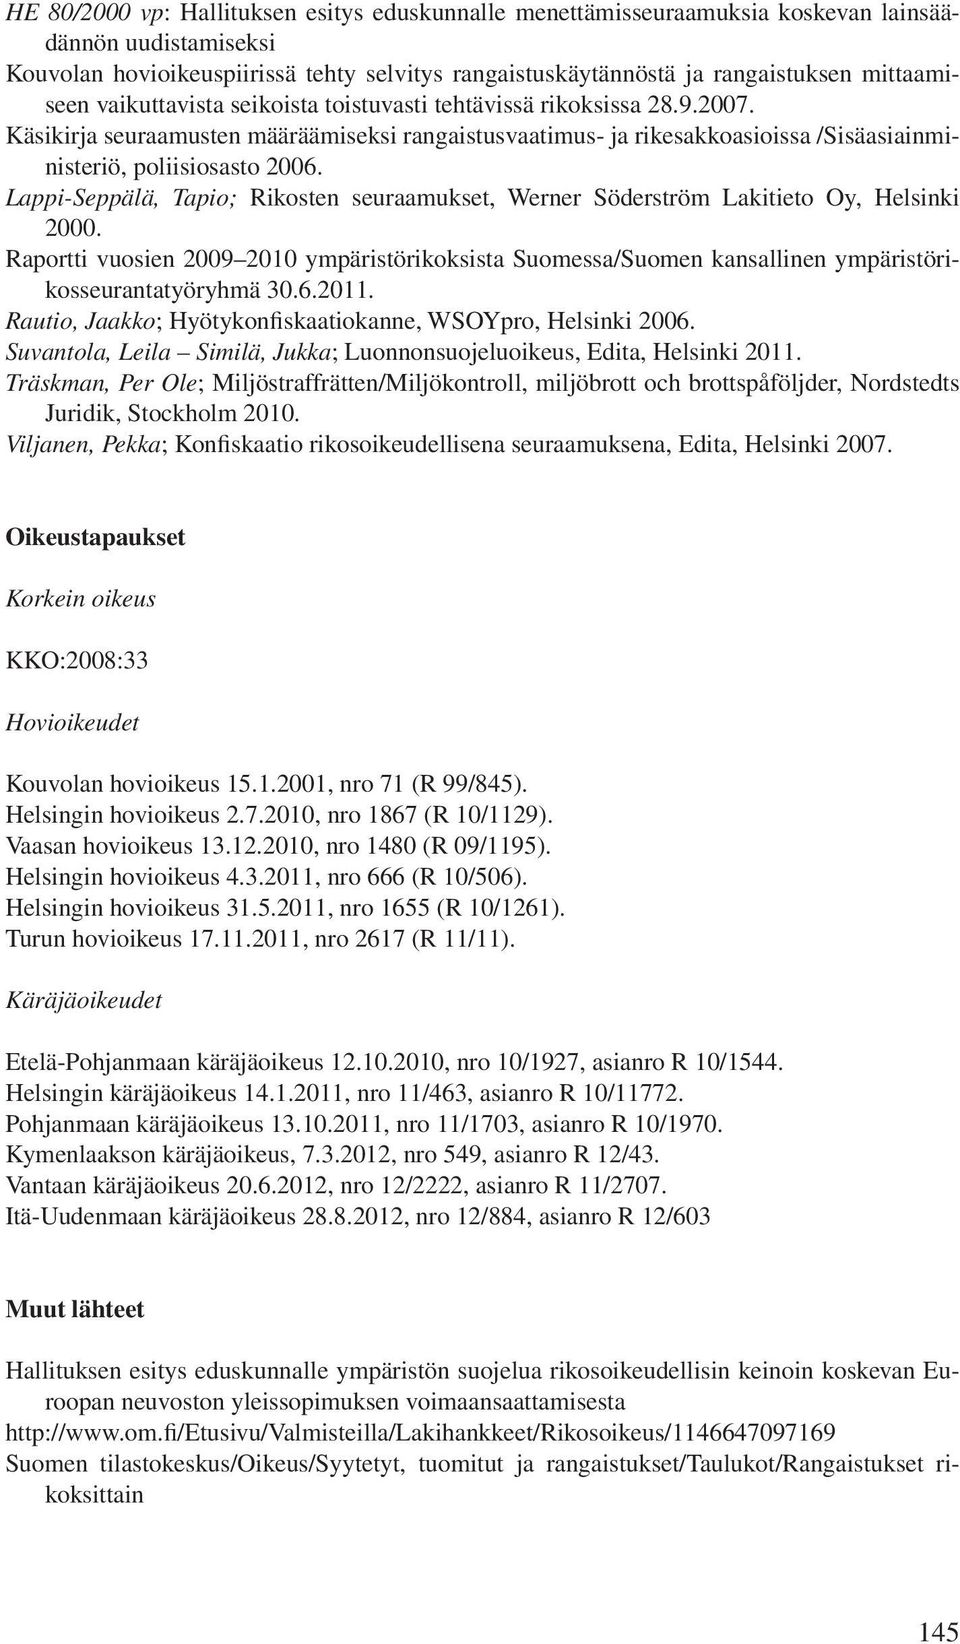 Käsikirja seuraamusten määräämiseksi rangaistusvaatimus- ja rikesakkoasioissa /Sisäasiainministeriö, poliisiosasto 2006.